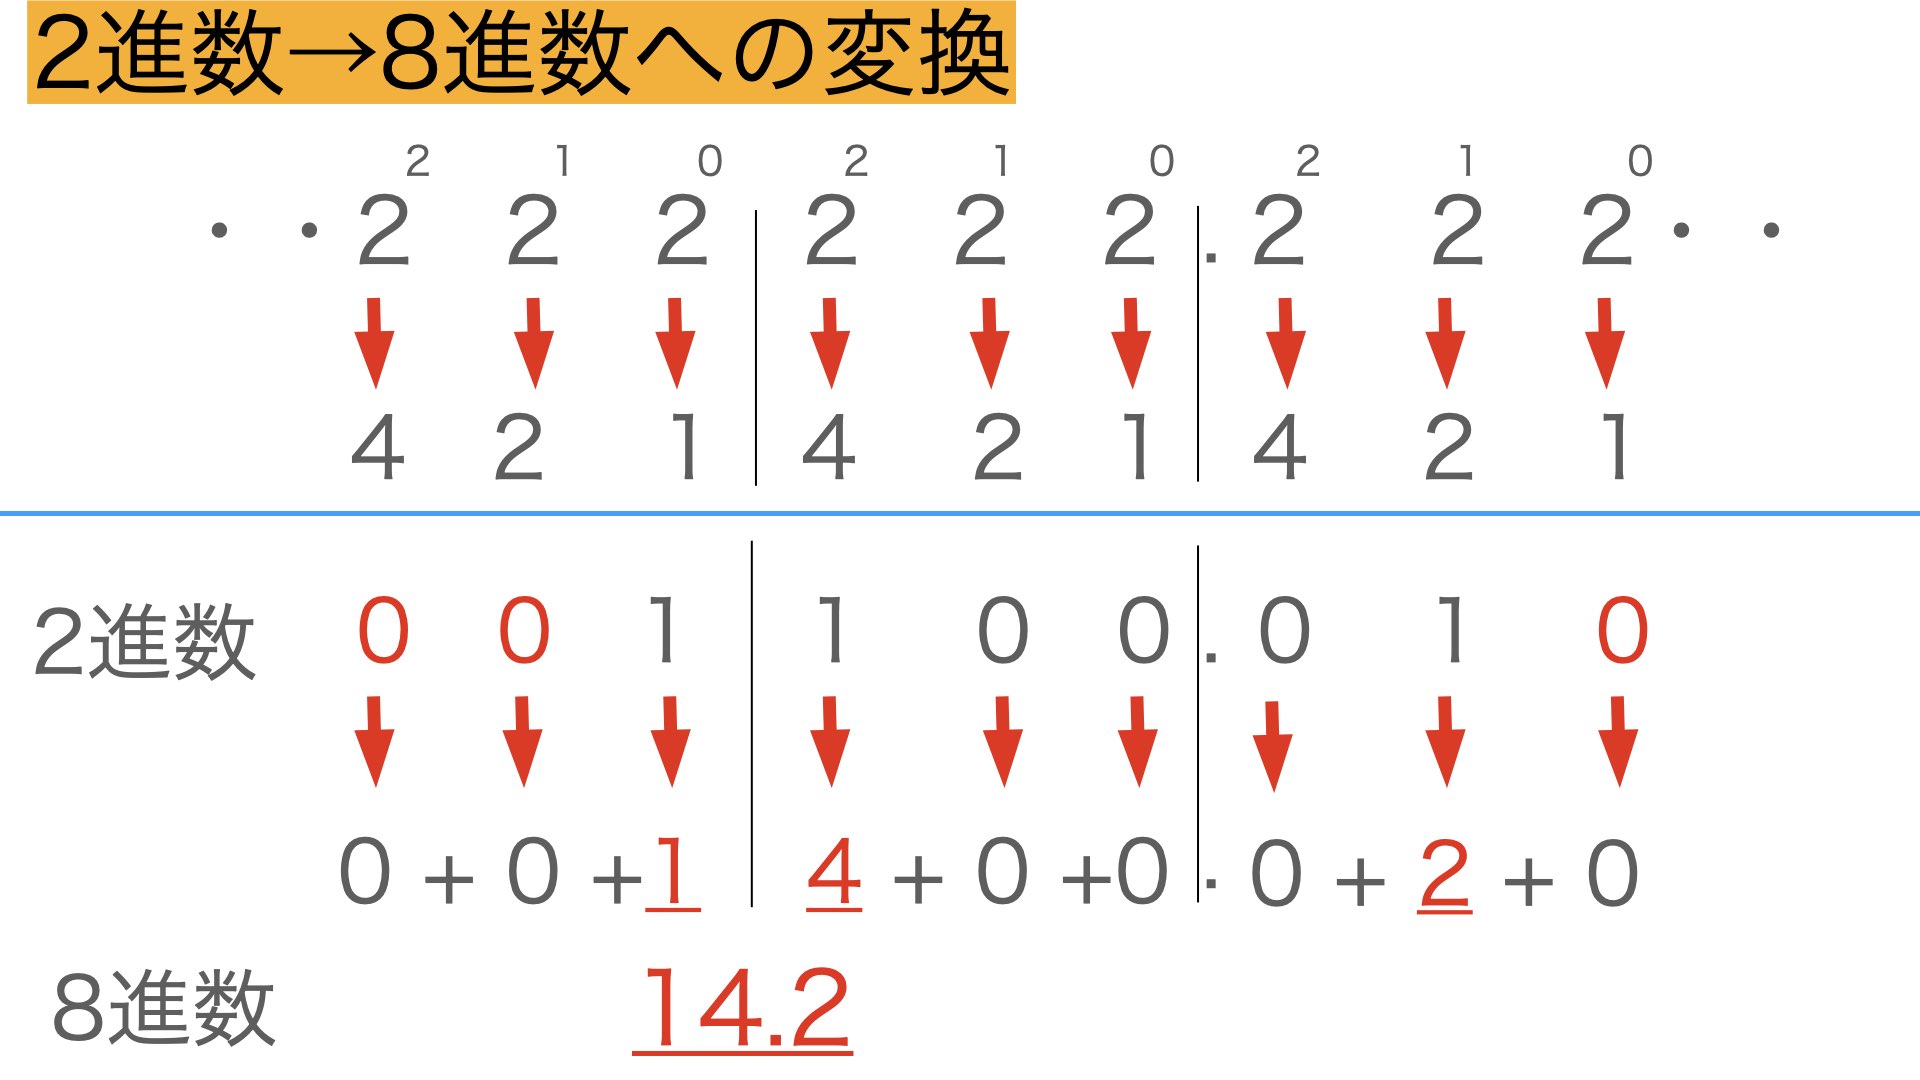 2進数→8進数